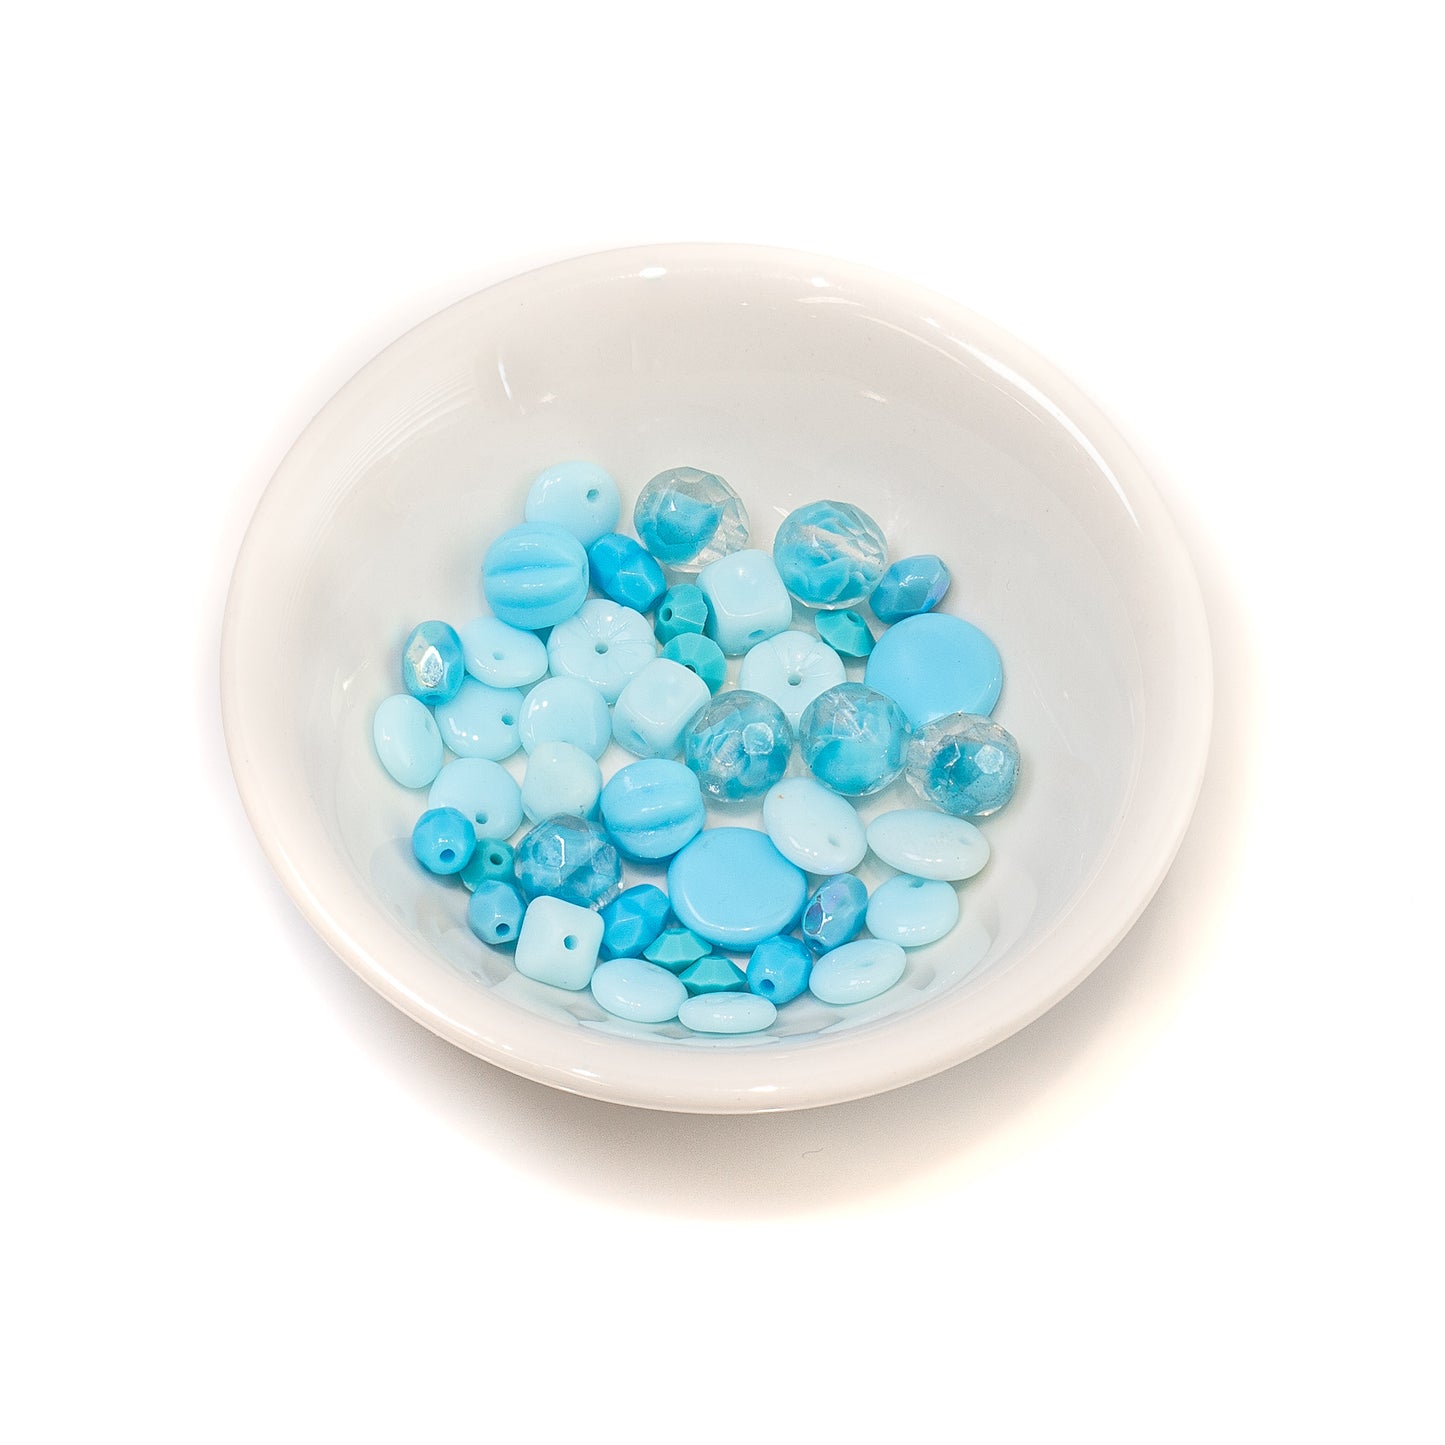 Vintage Aqua Glass Bead Mixes - Appox. 40 pcs.